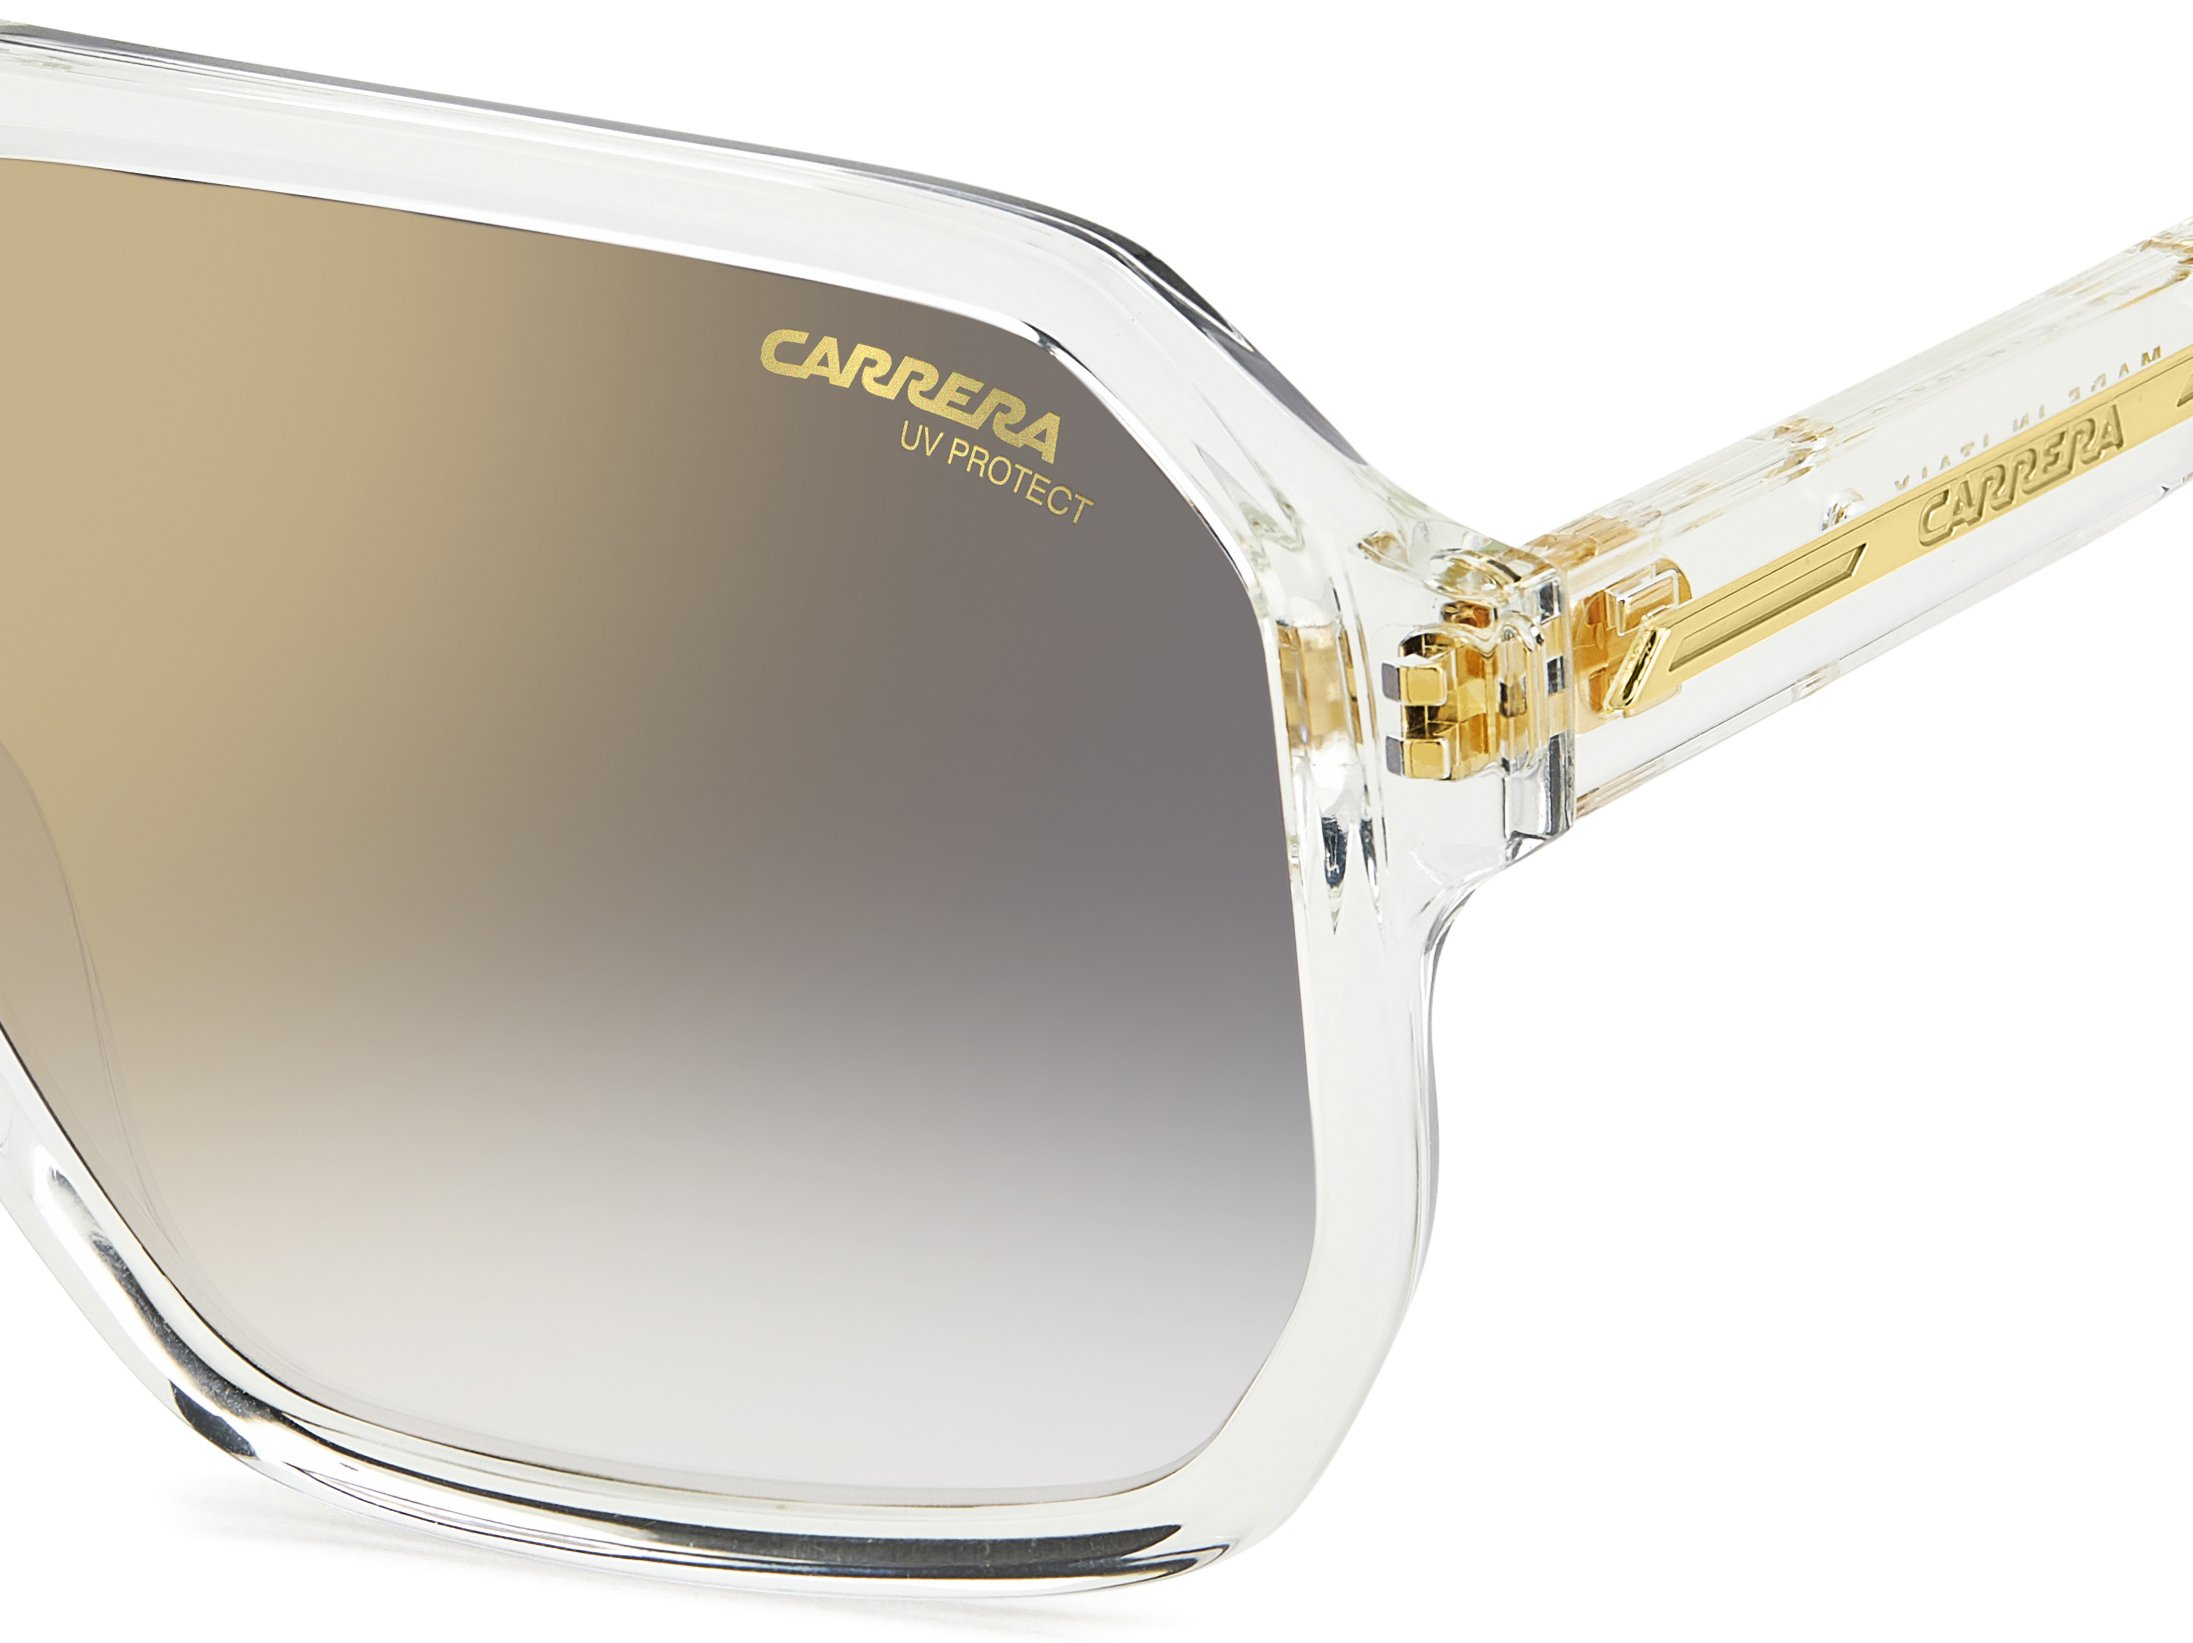 Das Bild zeigt die Sonnenbrille C01/S 900 von der Marke Carrera in  crystal.